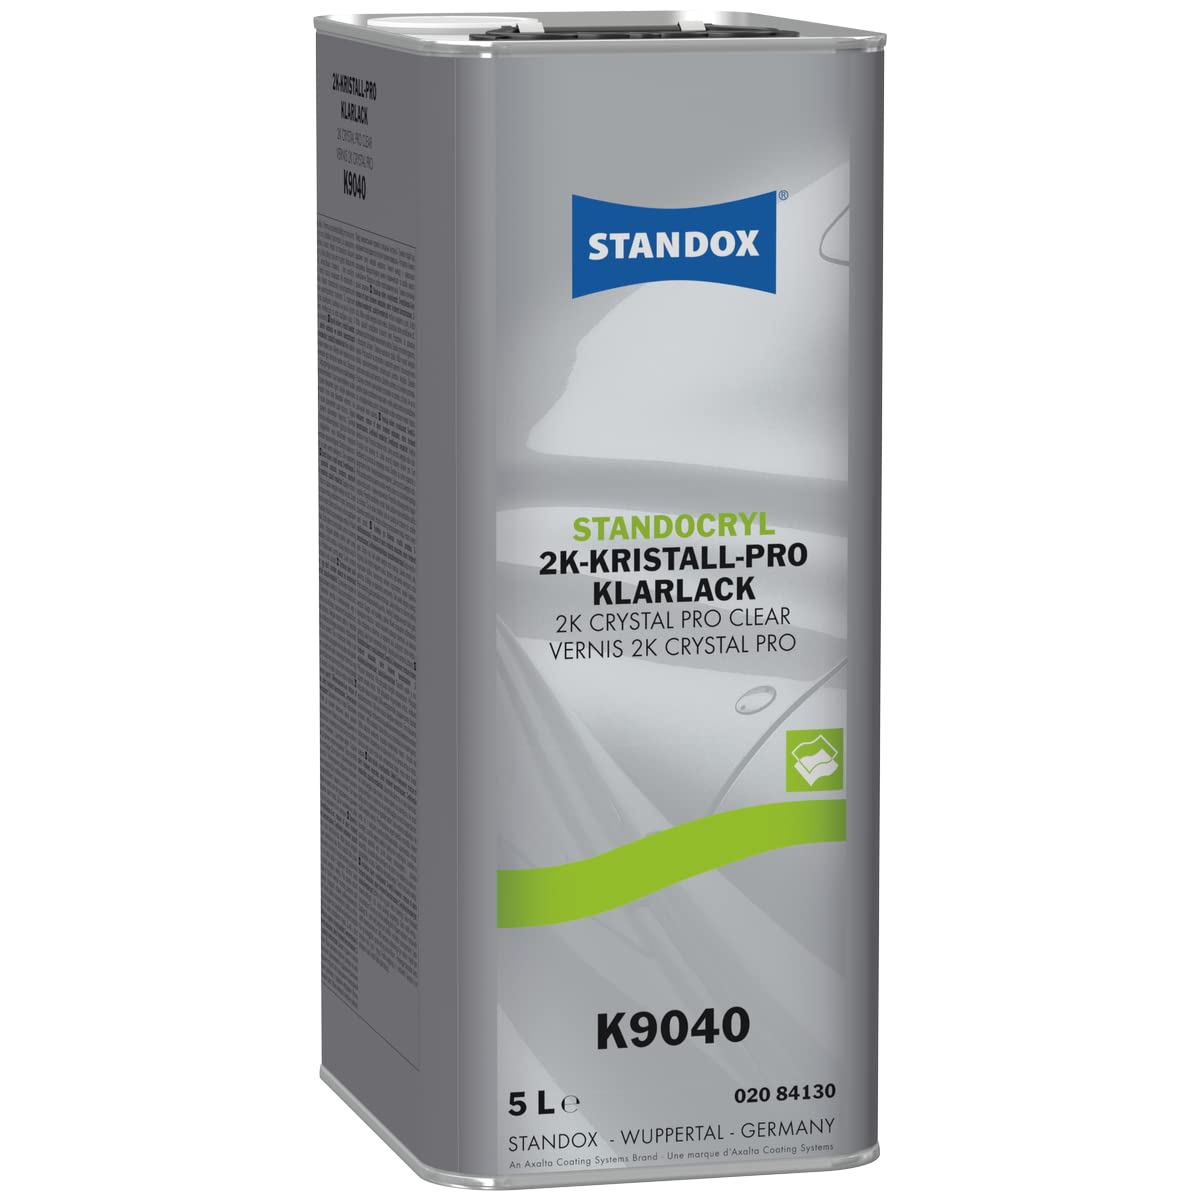 Standox Standocryl 2K-Kristall Pro Klarlack K9040 5L hochreaktiver 2-Komponenten-Klarlack für die Kleinschaden-, Teil- und Ganzlackierung von STANDOX